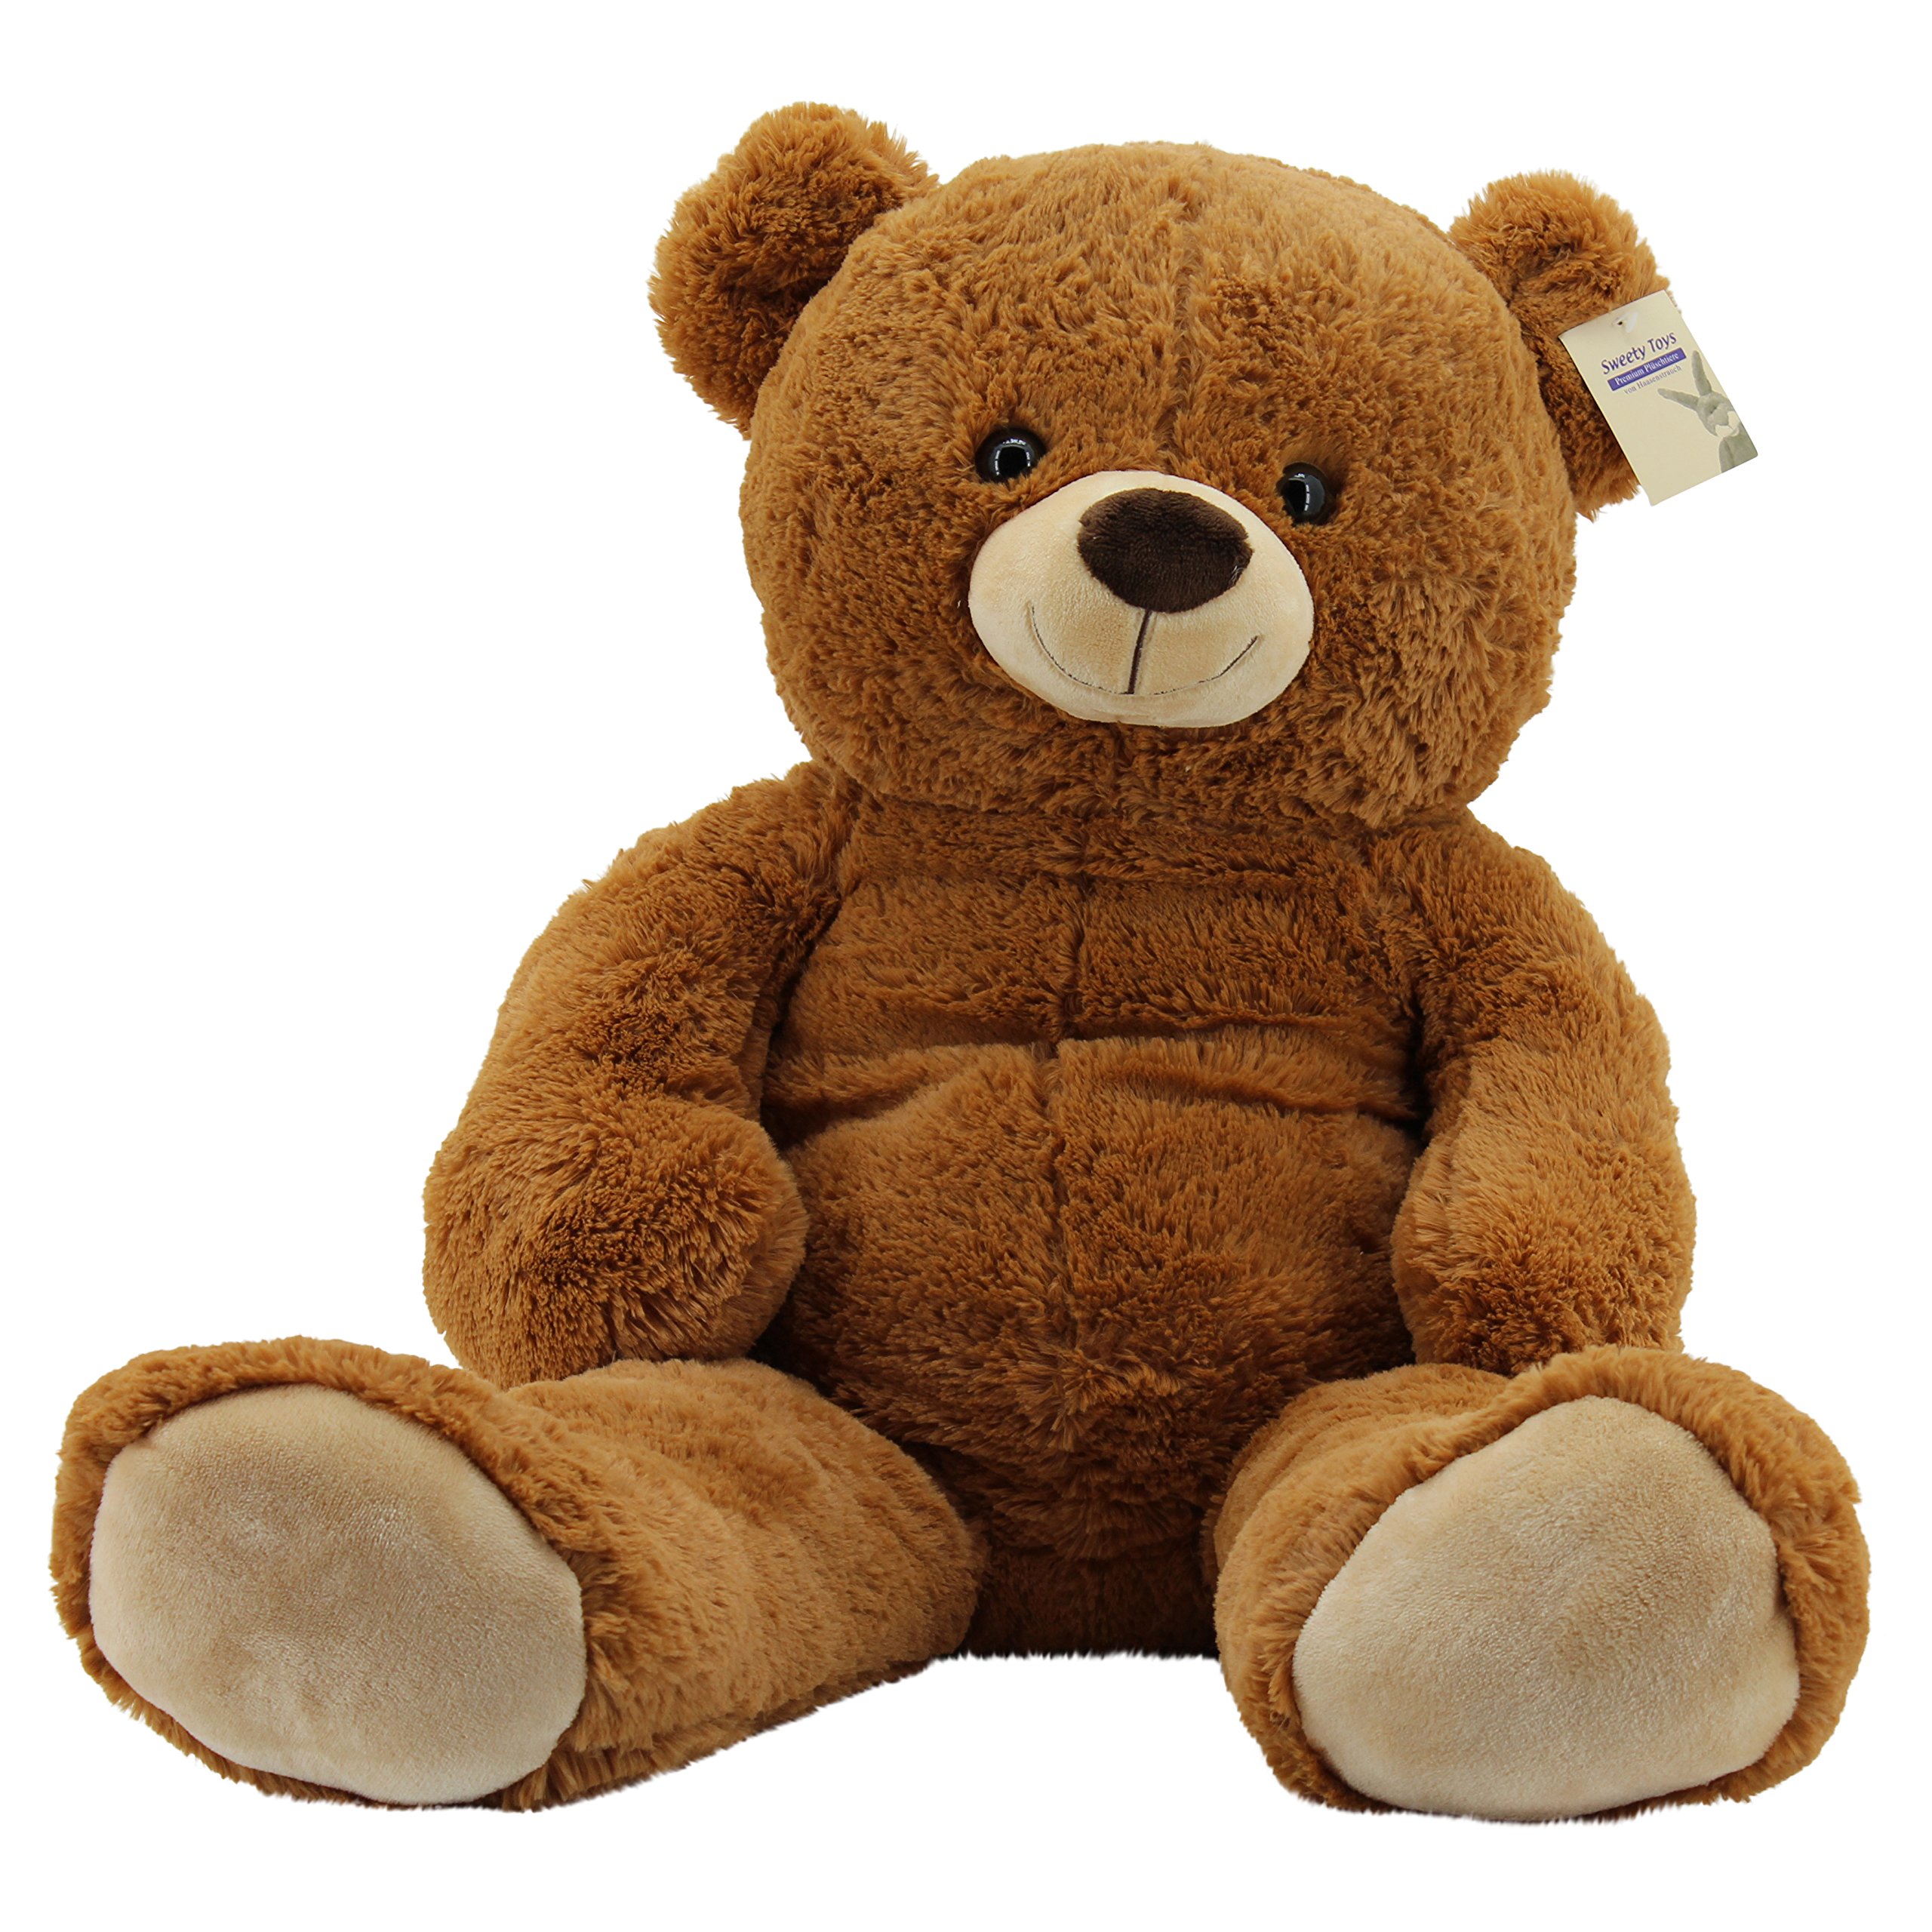 Sweety Toys 10189 Kuscheltier Teddy Bär 100 cm Plüschbär zum Kuscheln- flauschiges Bärchen Stofftier für Mädchen, Jungen & Babys- Plüschtier Teddybär zum kuscheln